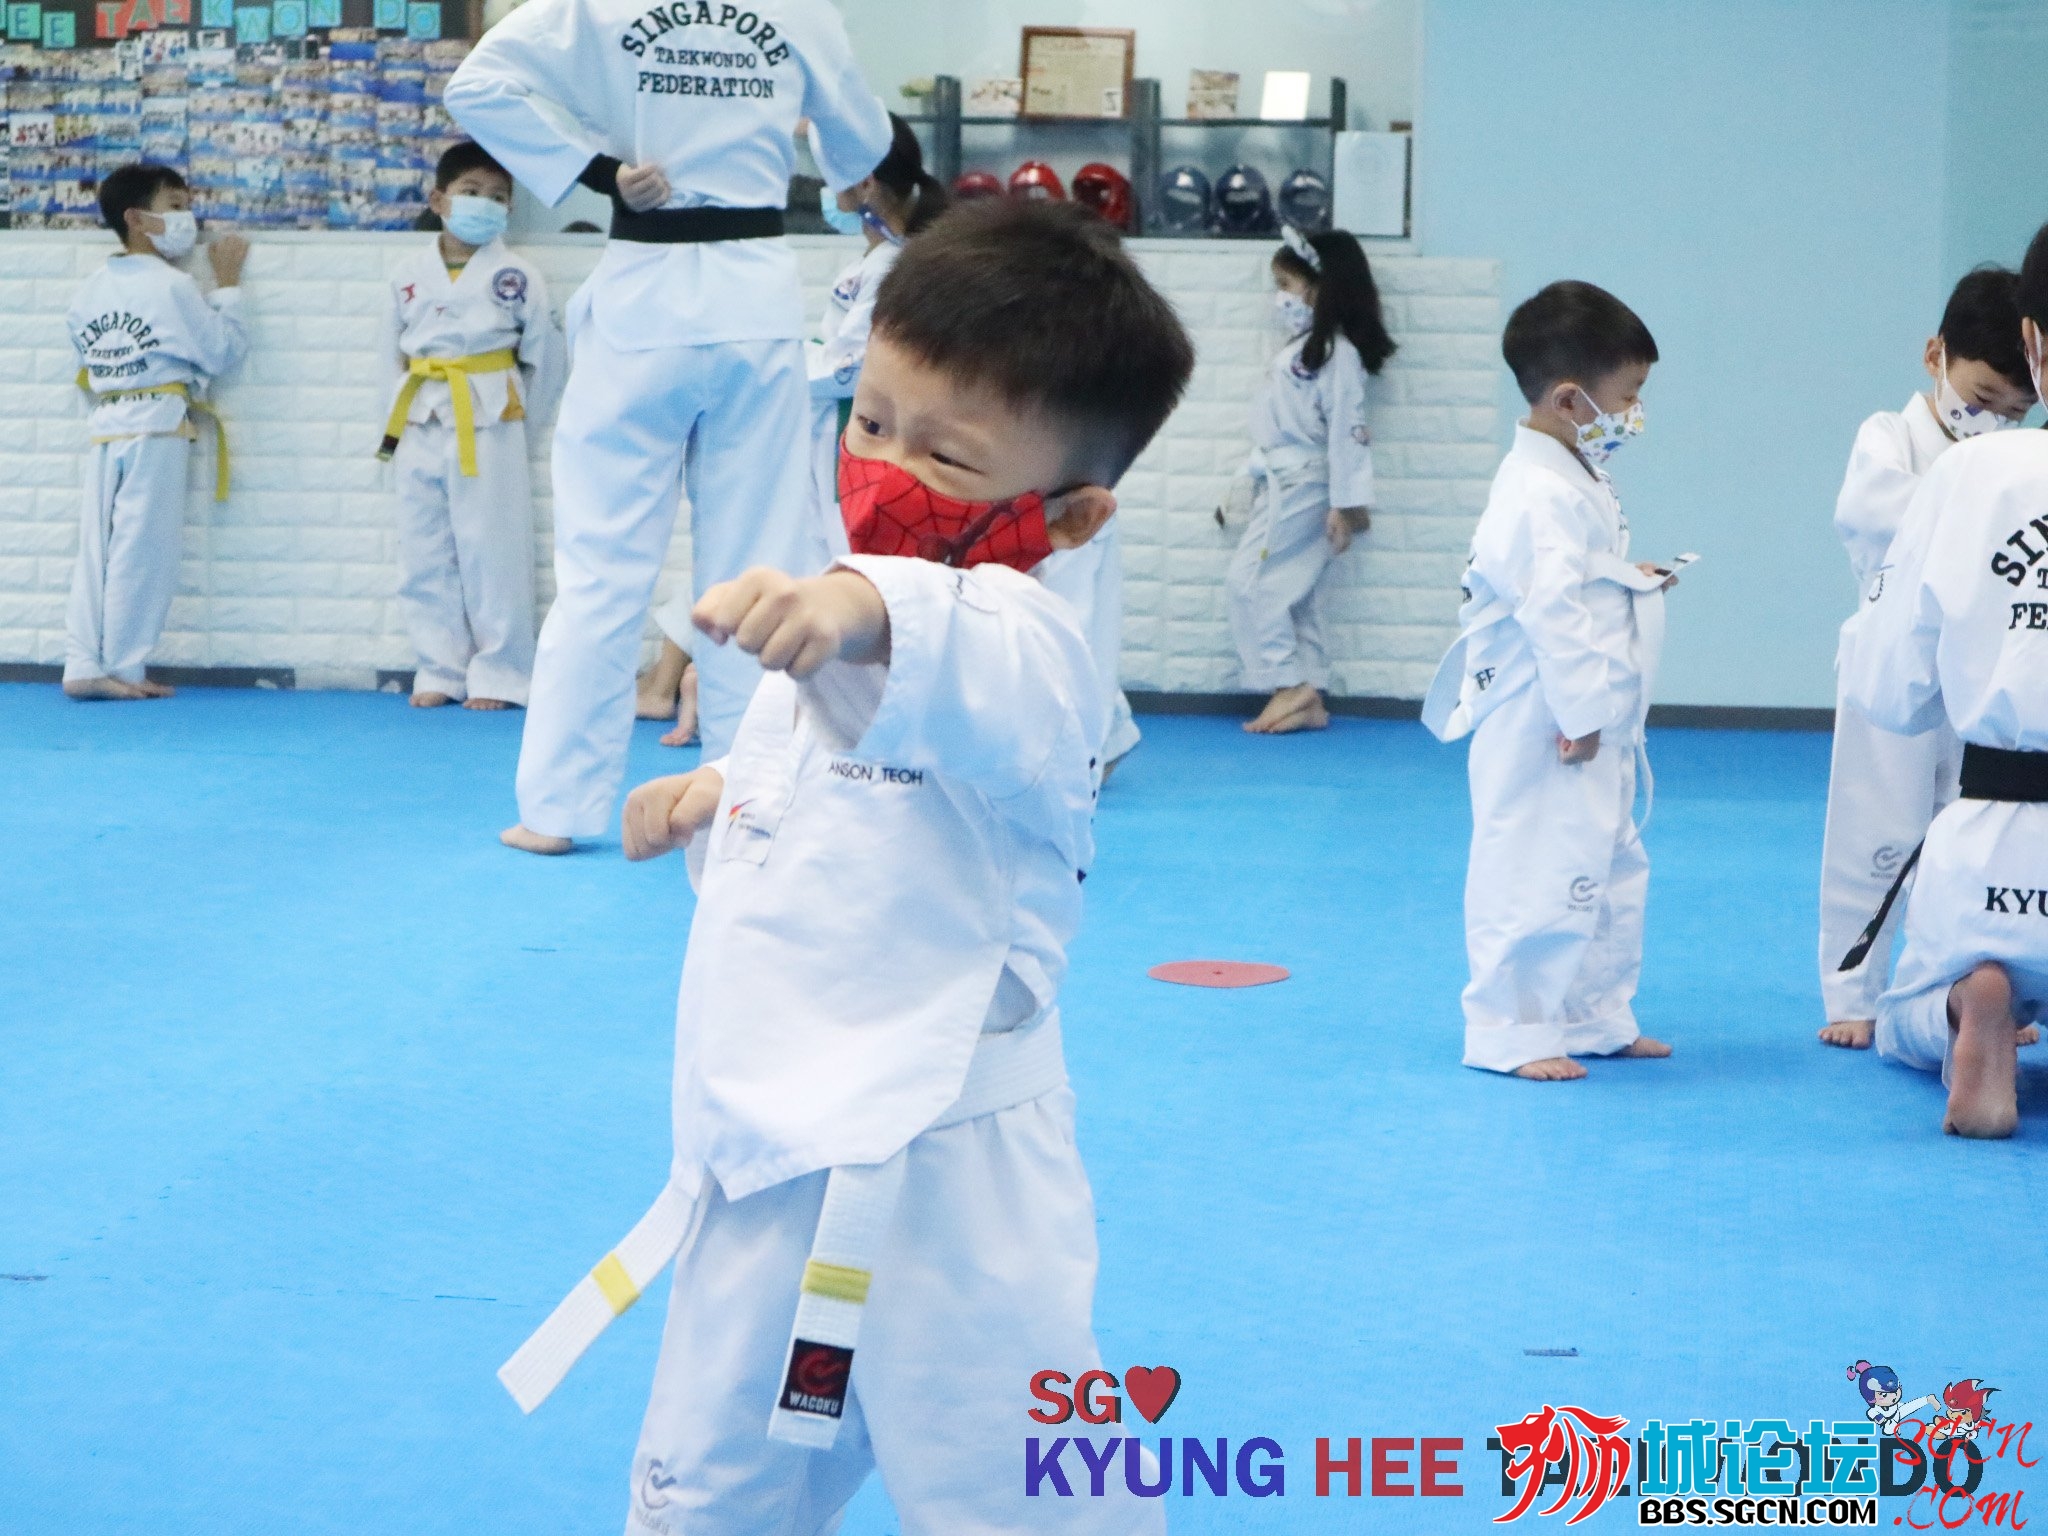 Kyunghee Taekwondo 2k.jpg